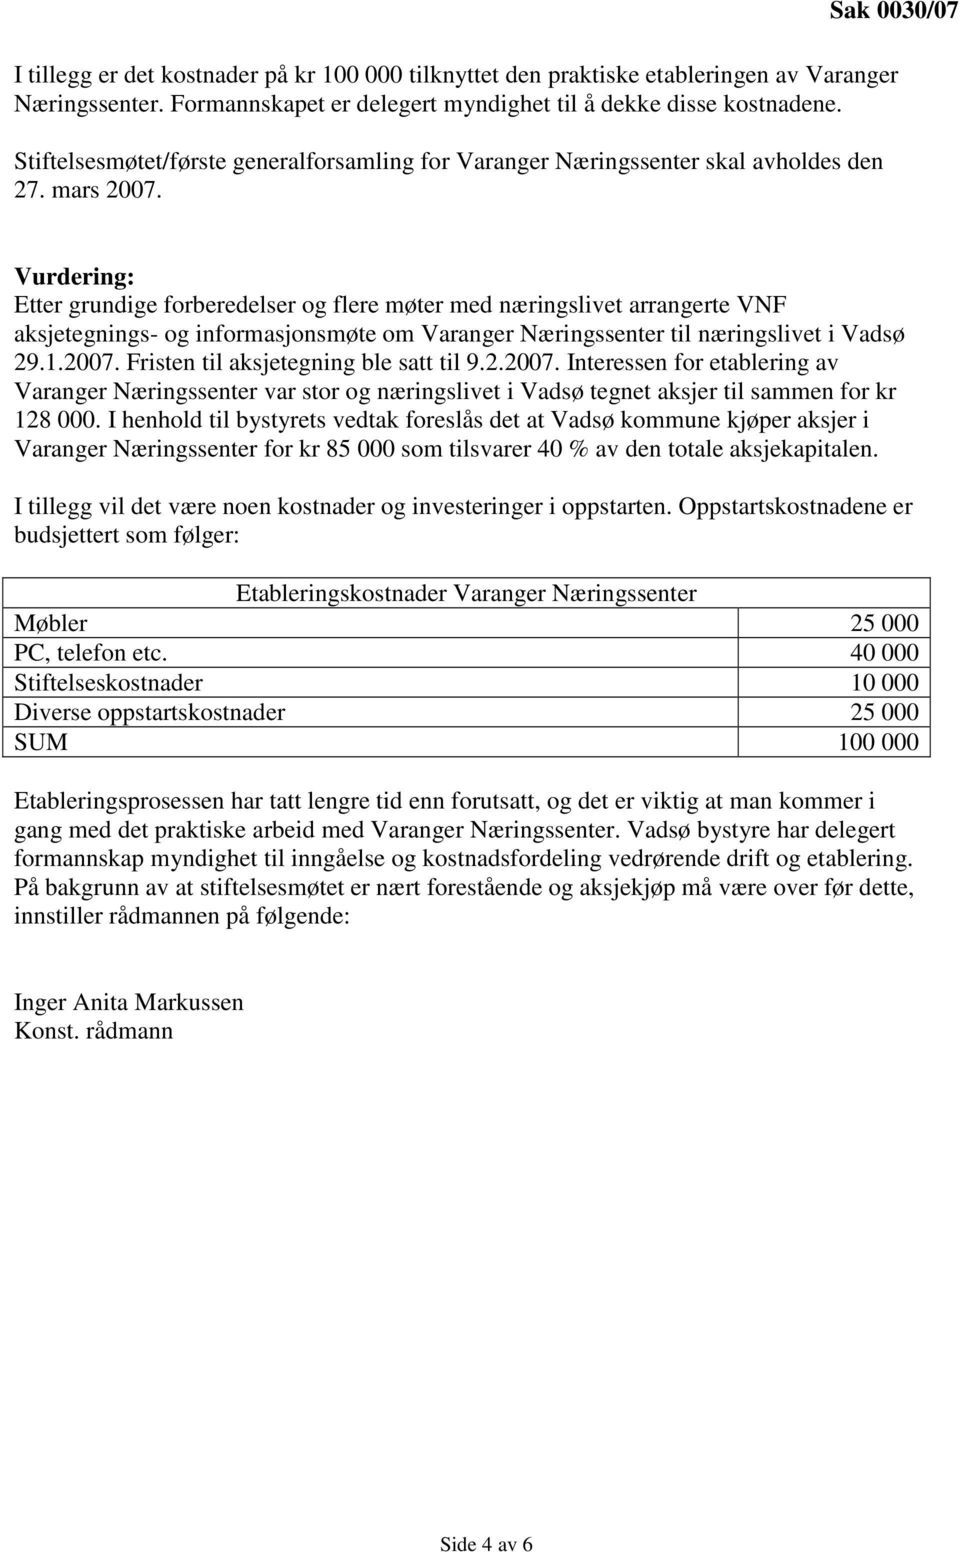 Vurdering: Etter grundige forberedelser og flere møter med næringslivet arrangerte VNF aksjetegnings- og informasjonsmøte om Varanger Næringssenter til næringslivet i Vadsø 29.1.2007.